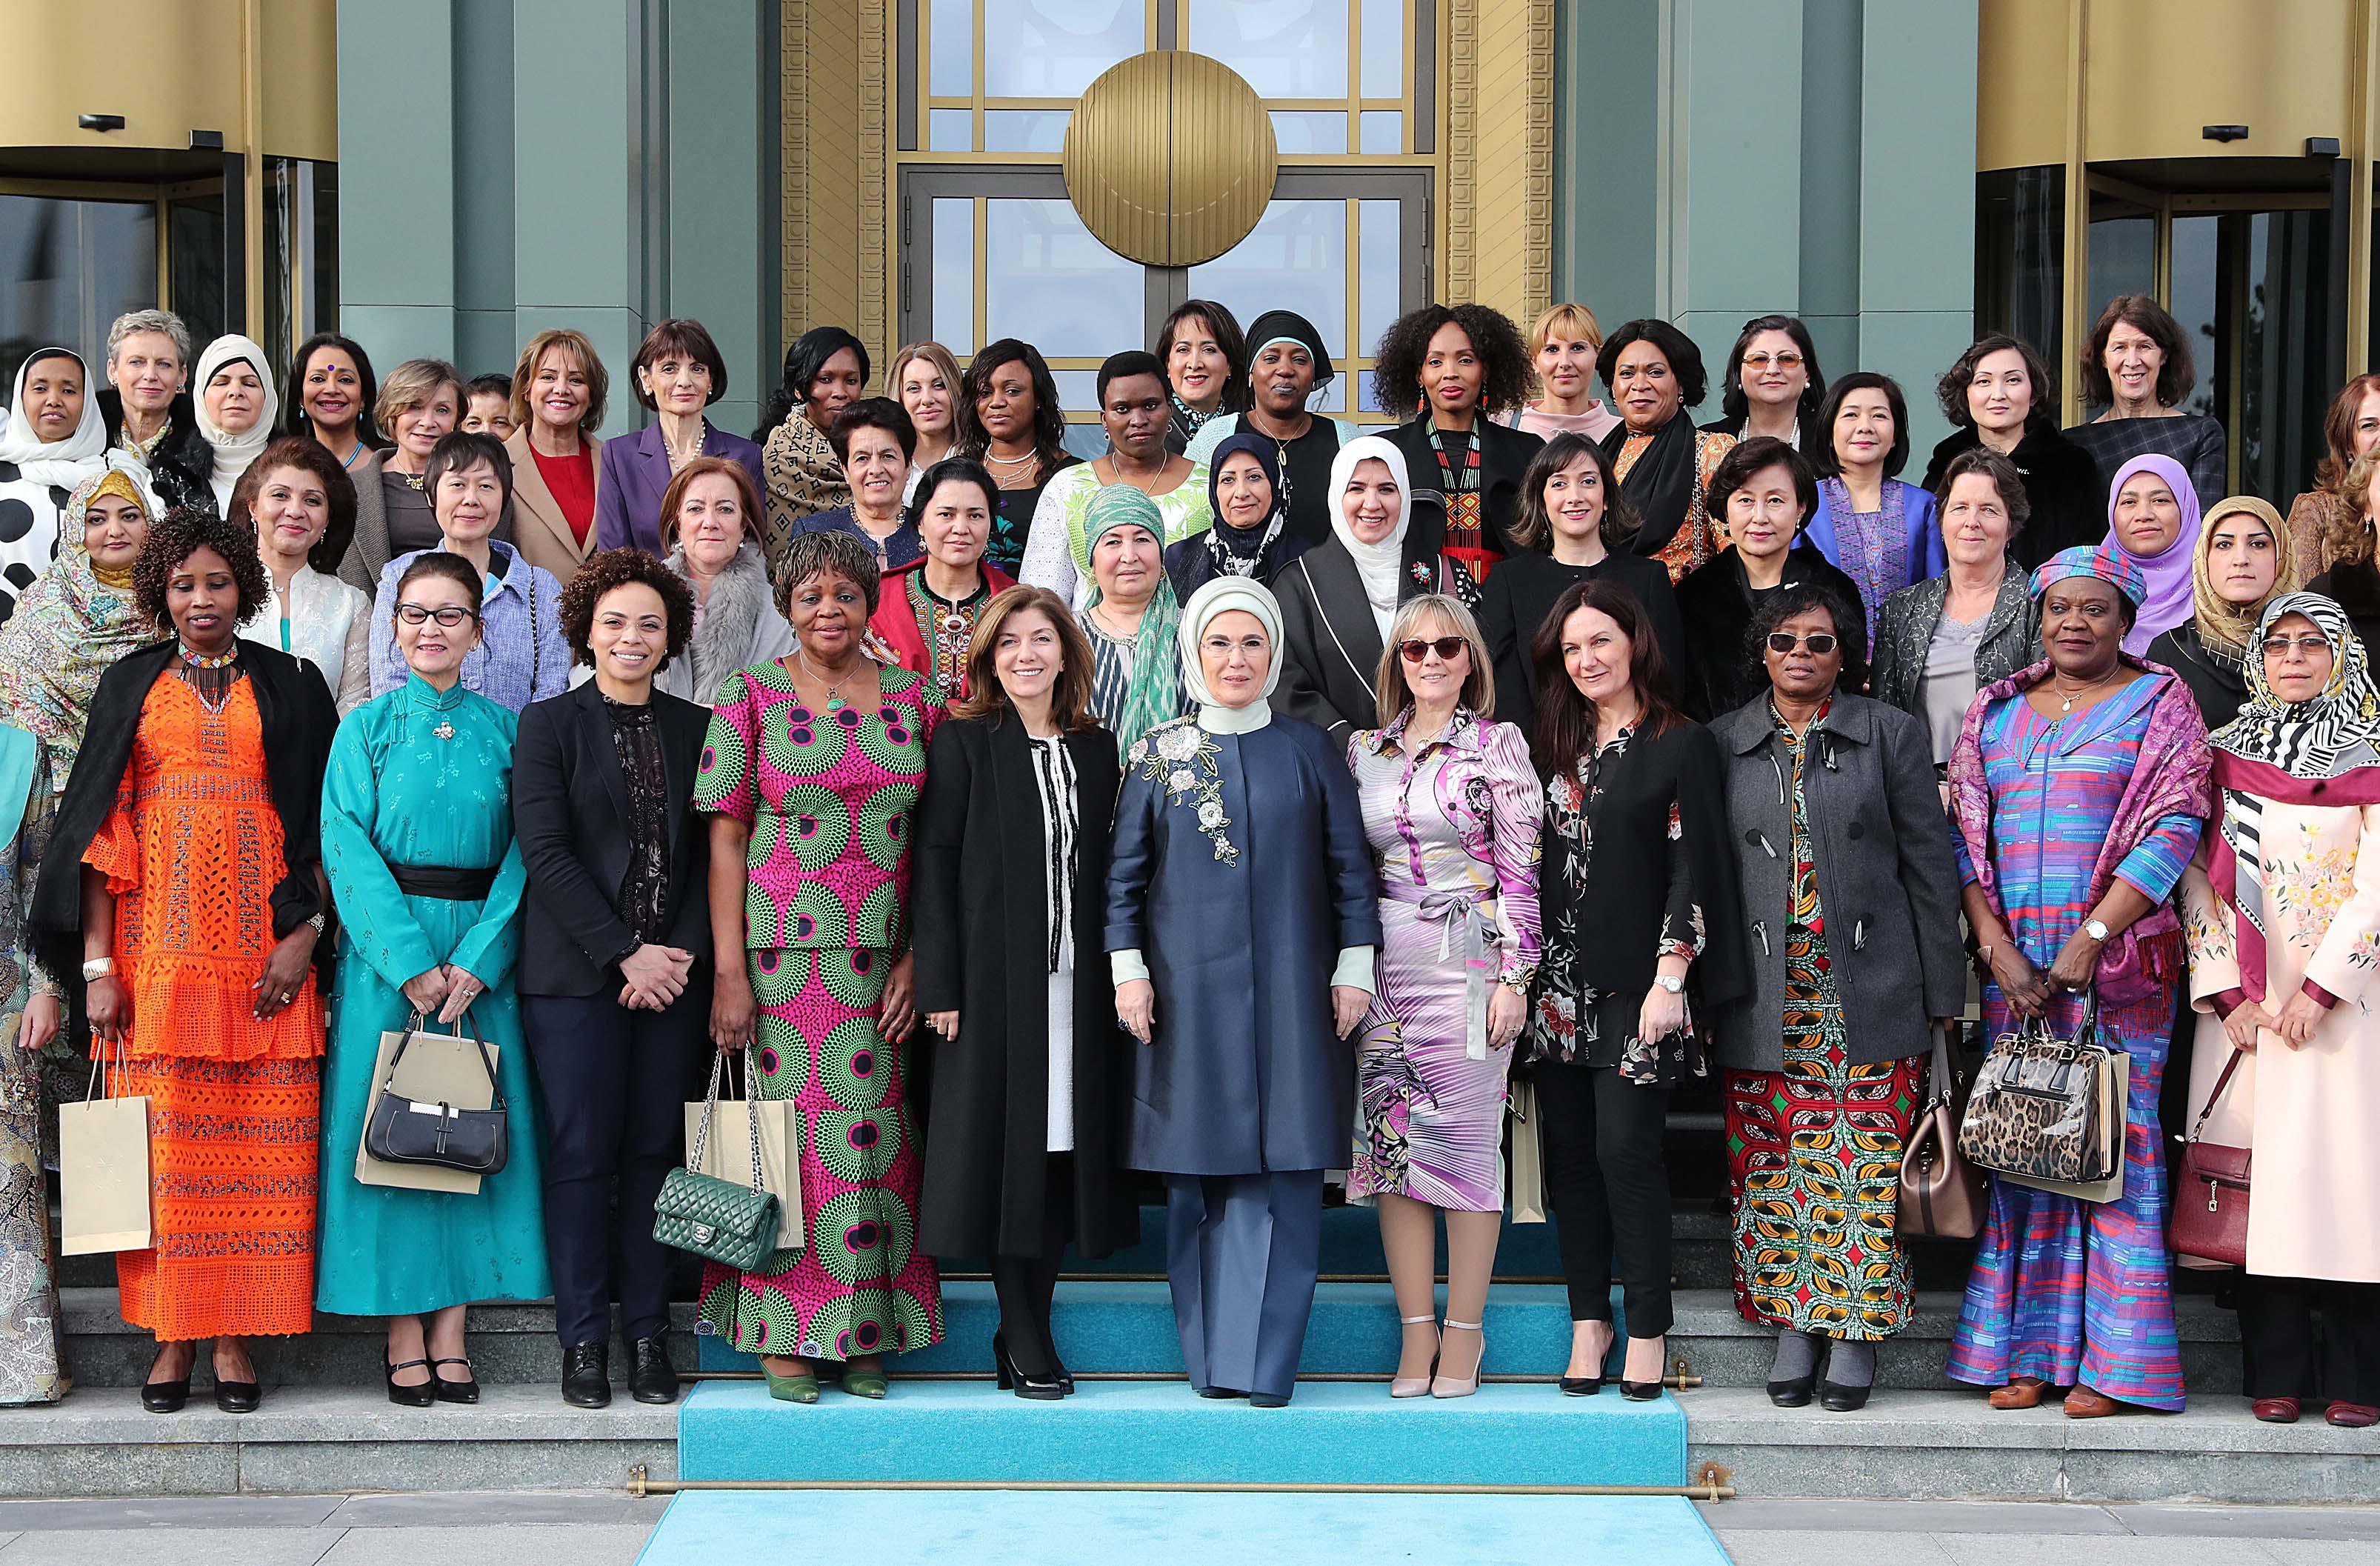 Emine Erdoğan: Kadınların, çocukların dertleri için kendimizi sorumlu hissediyoruz